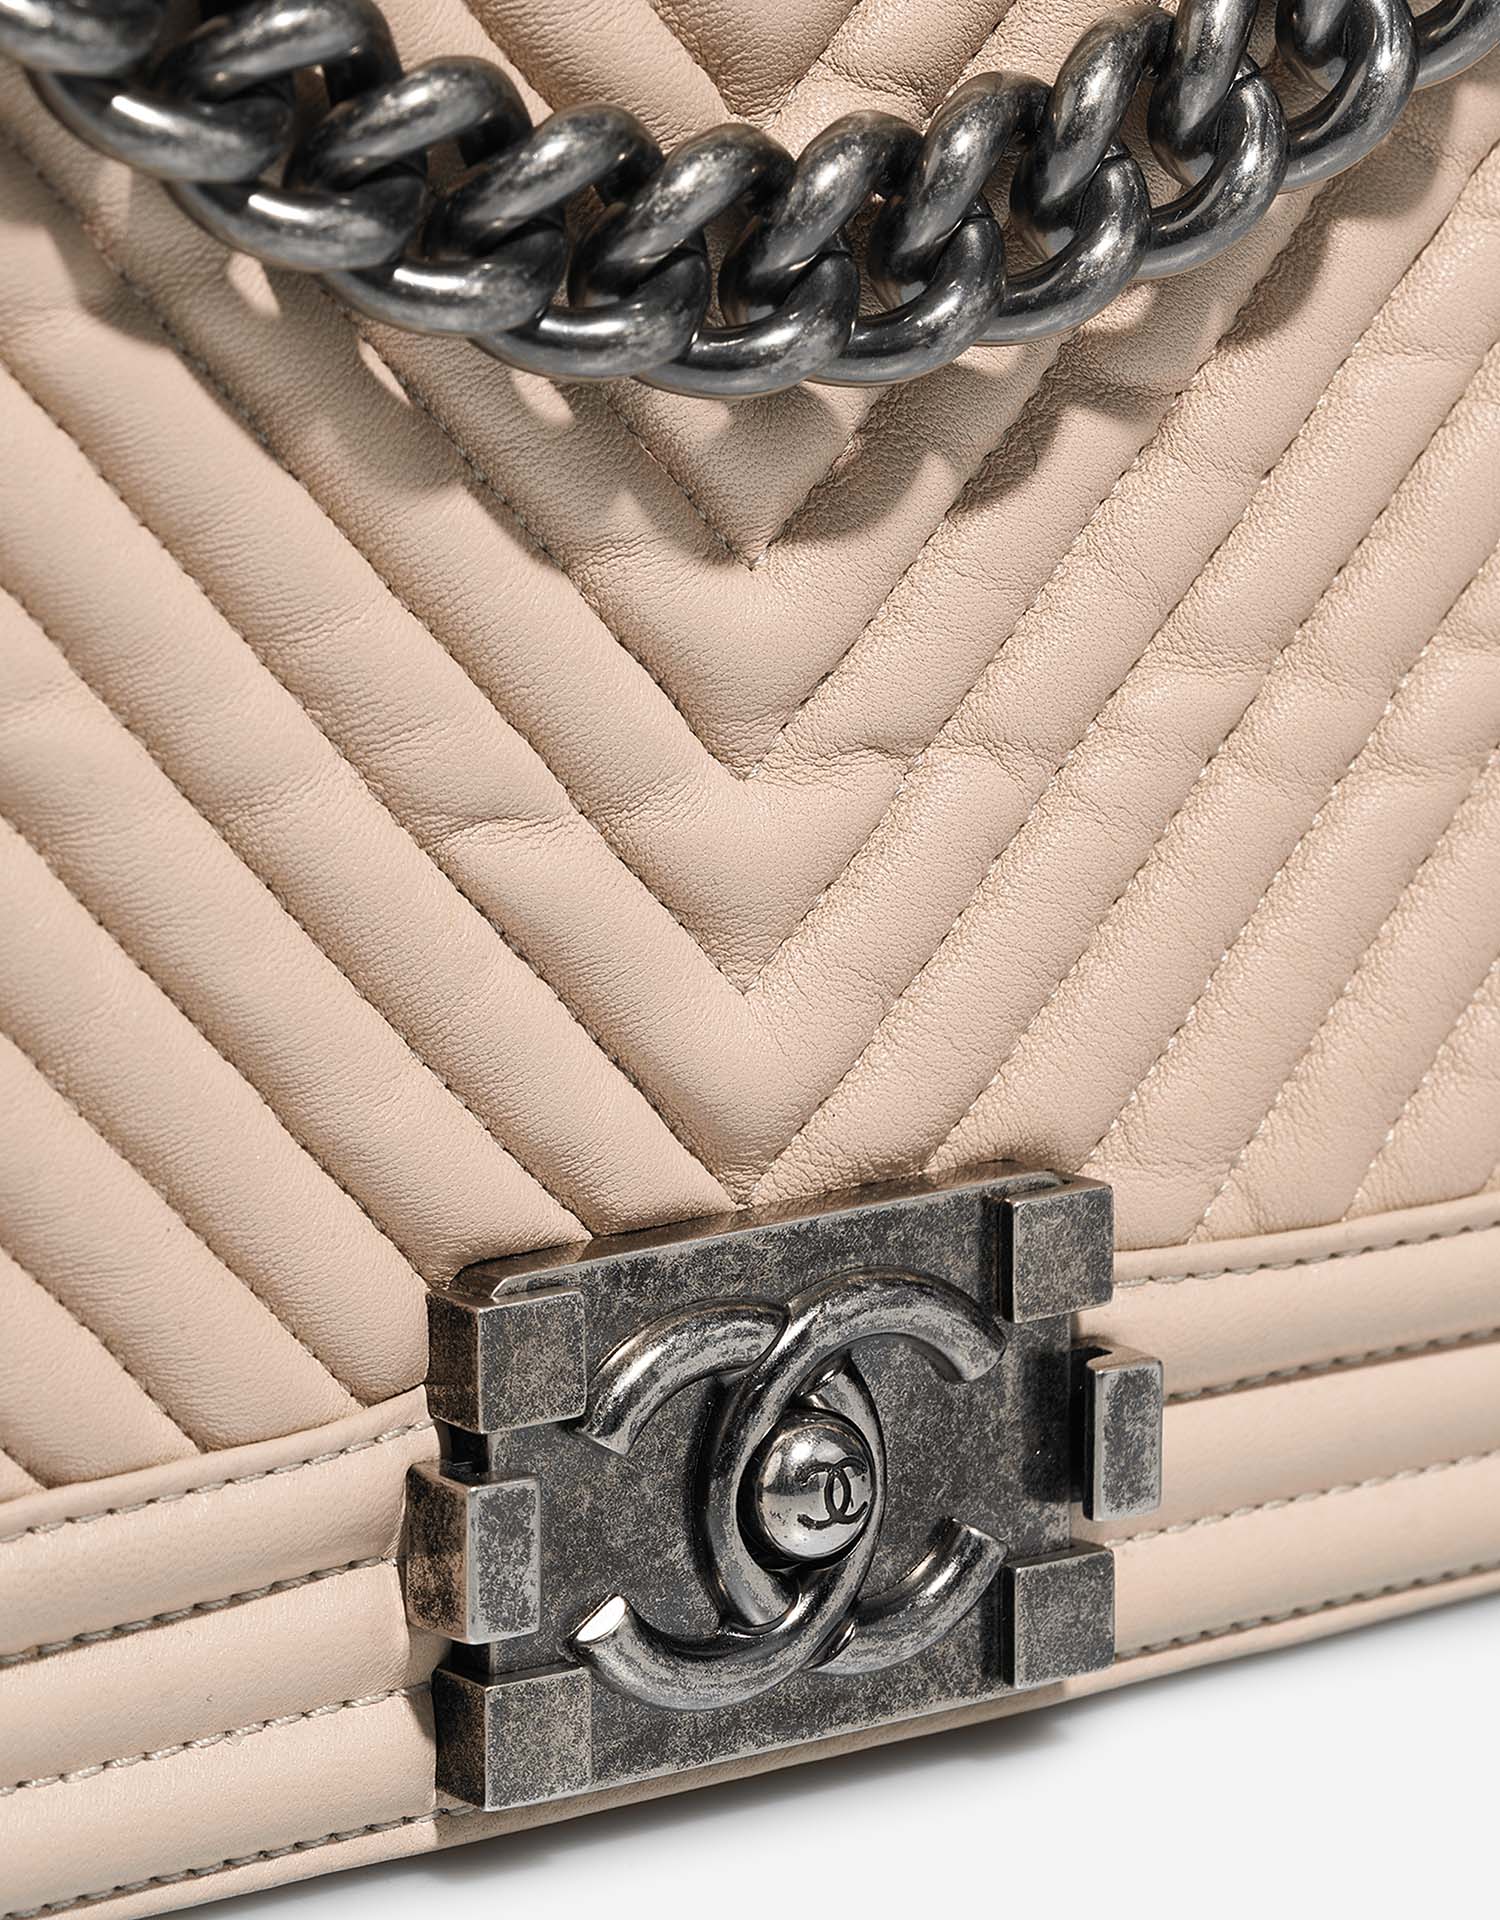 Chanel Boy NewMedium Beige Verschluss-System | Verkaufen Sie Ihre Designer-Tasche auf Saclab.com